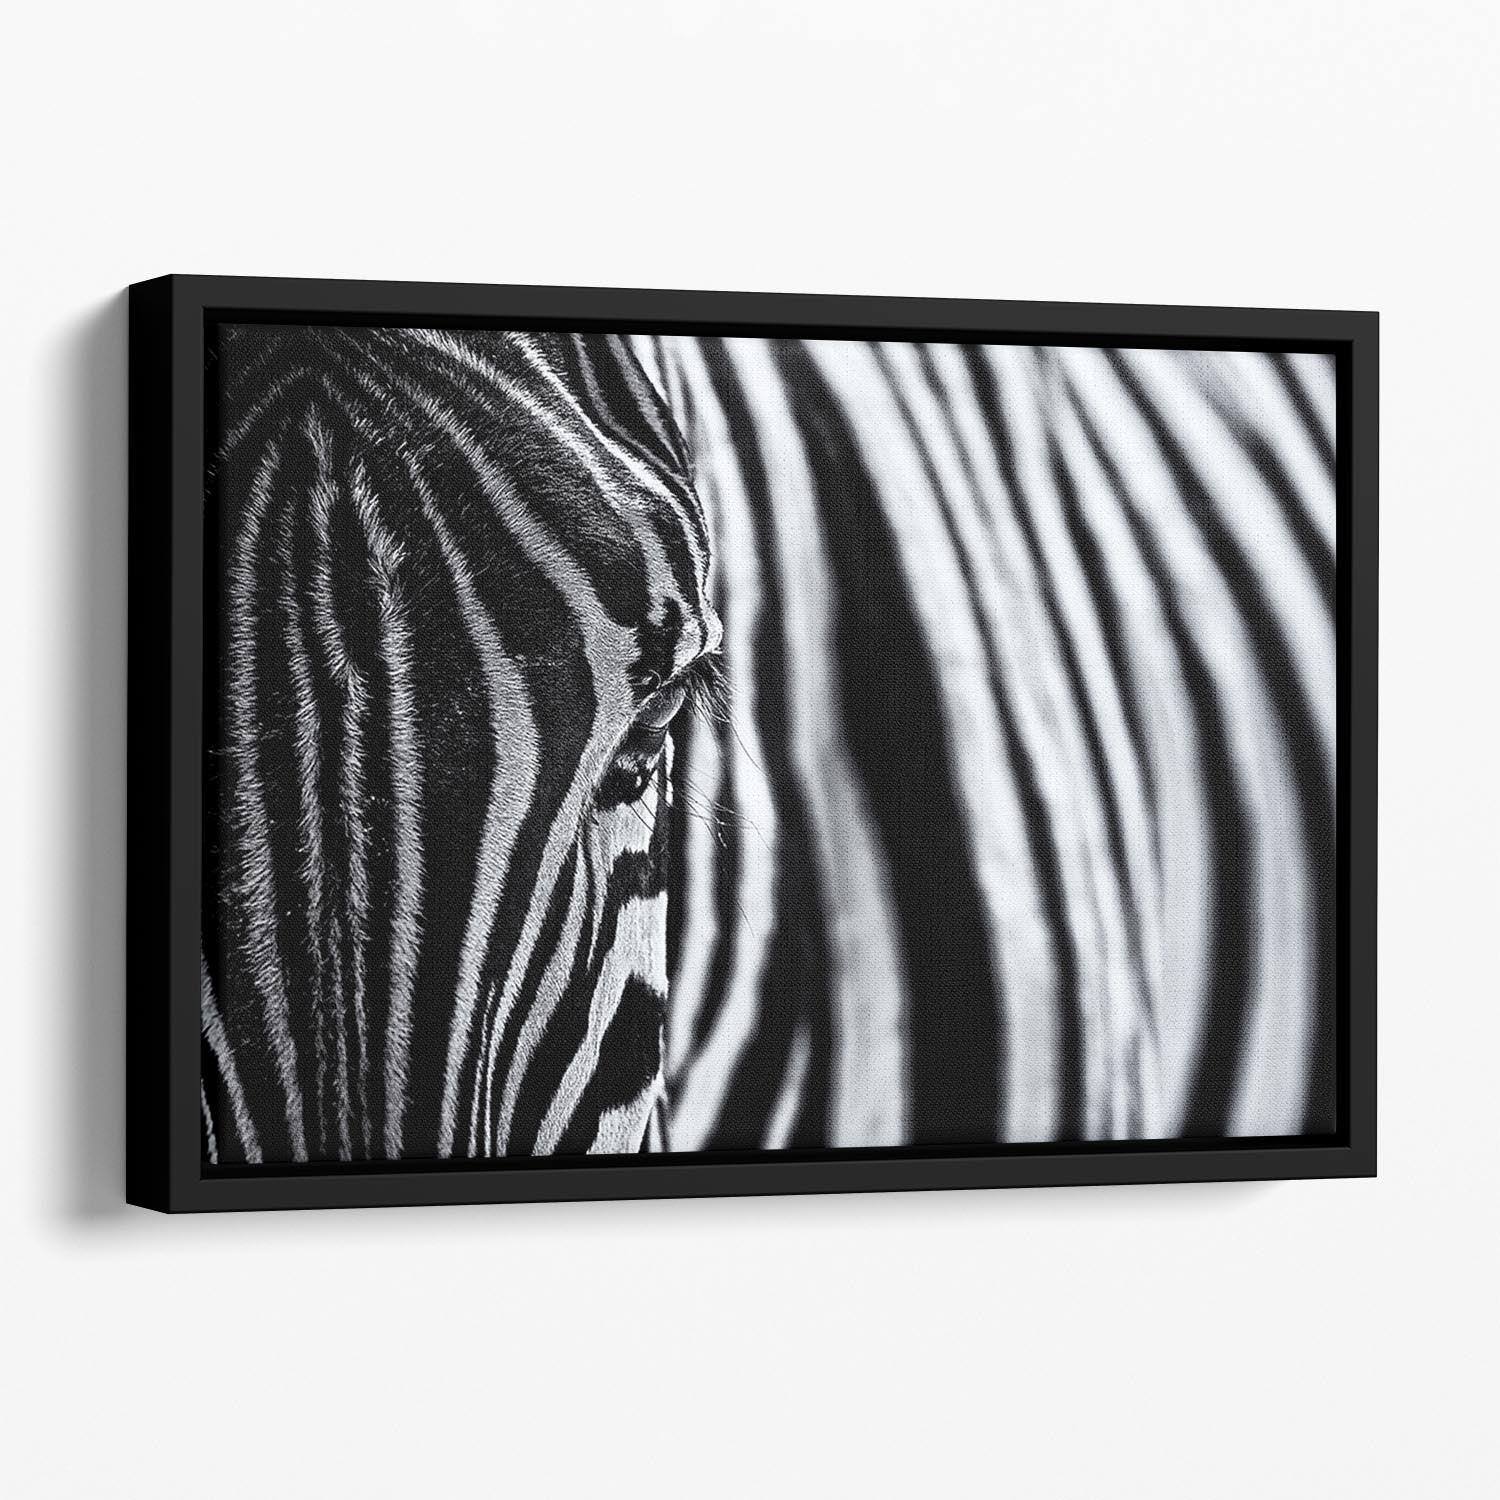 Zebra Close Up Floating Framed Canvas - Canvas Art Rocks - 1